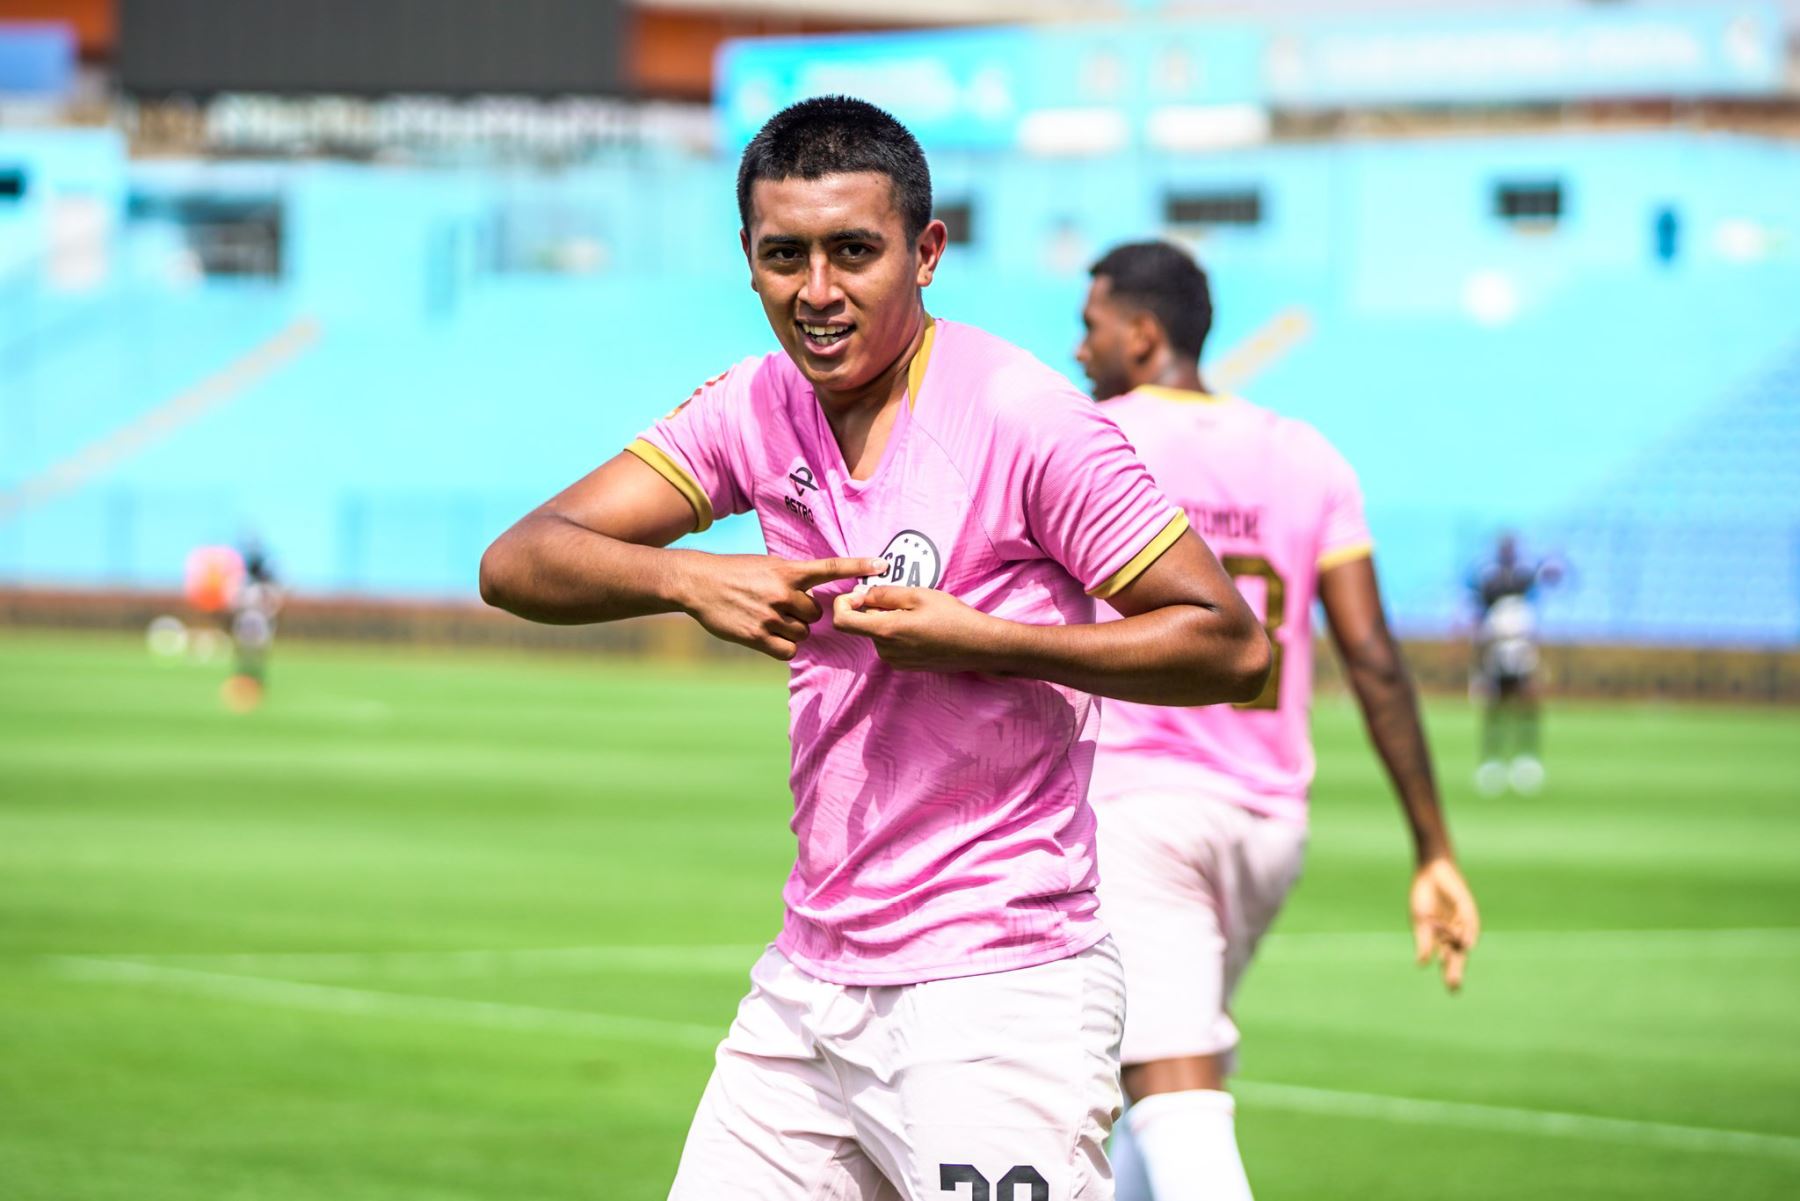 El equipo rosado remontó el partido y logró vencer 2-1 al Unión Comercio en el estadio Alberto Gallardo, por la jornada 3 de la Liga 1 de Fútbol Profesional.

Foto: Sport Boys